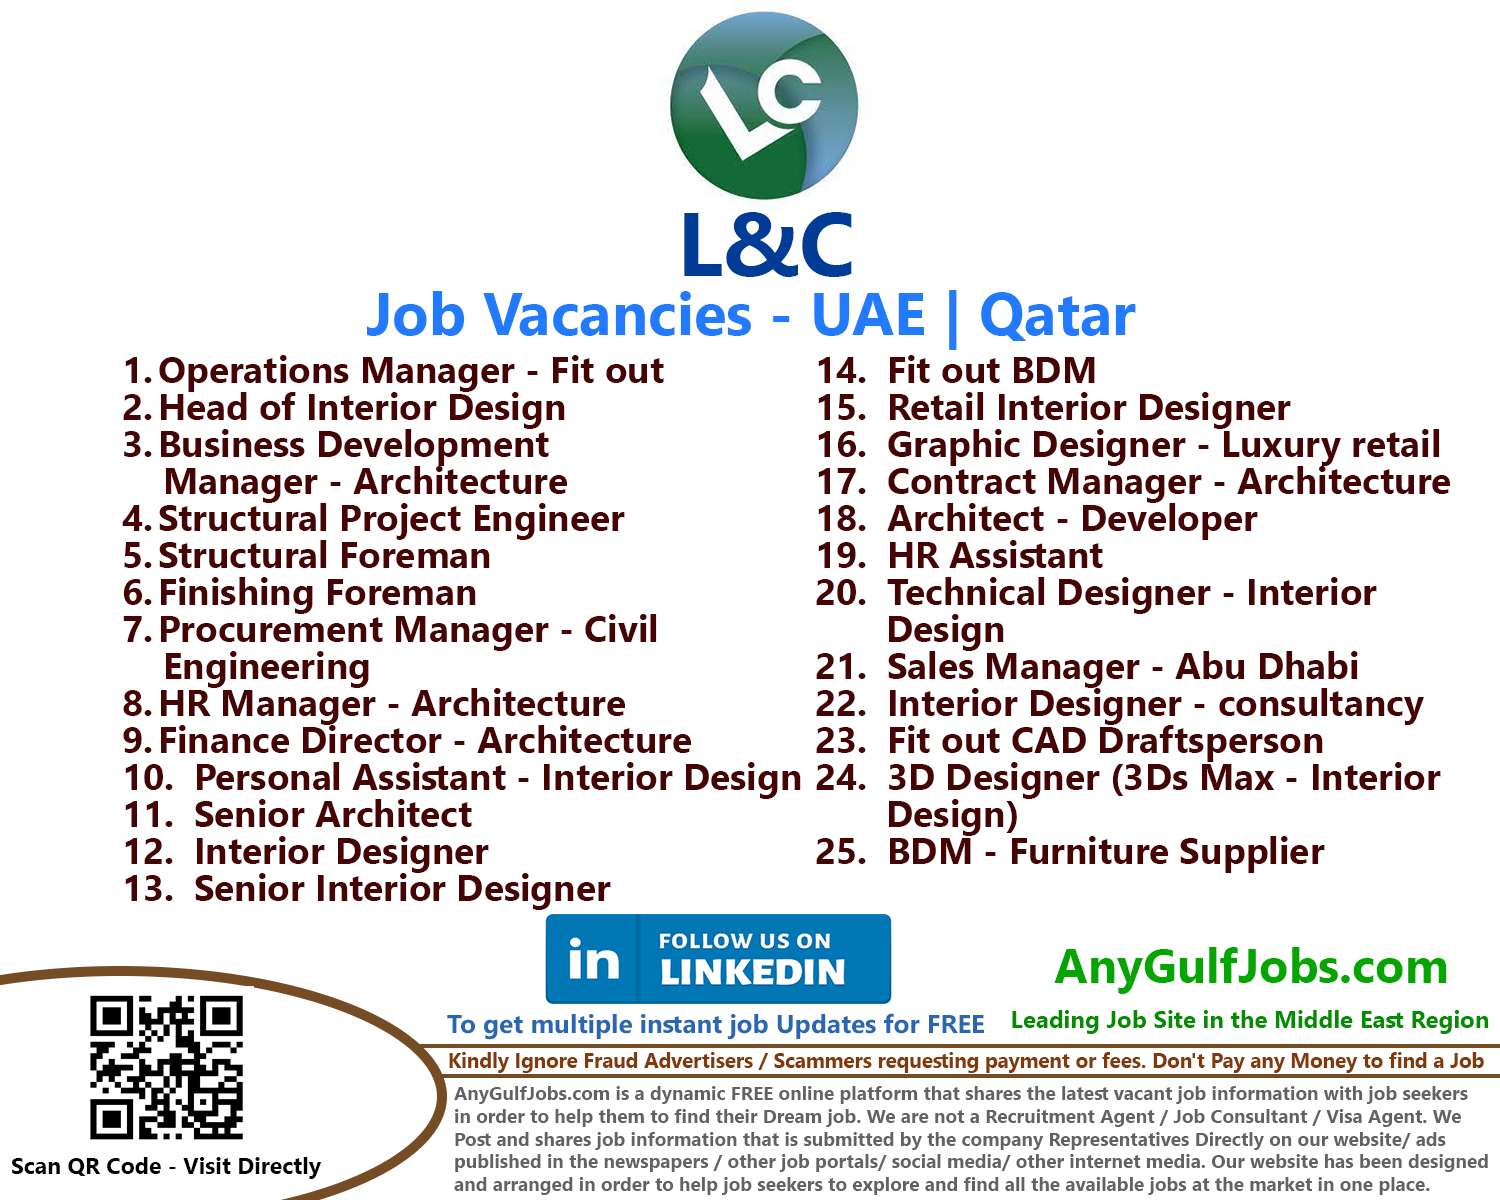 L&C Recruitment Multiple Job Vacancies